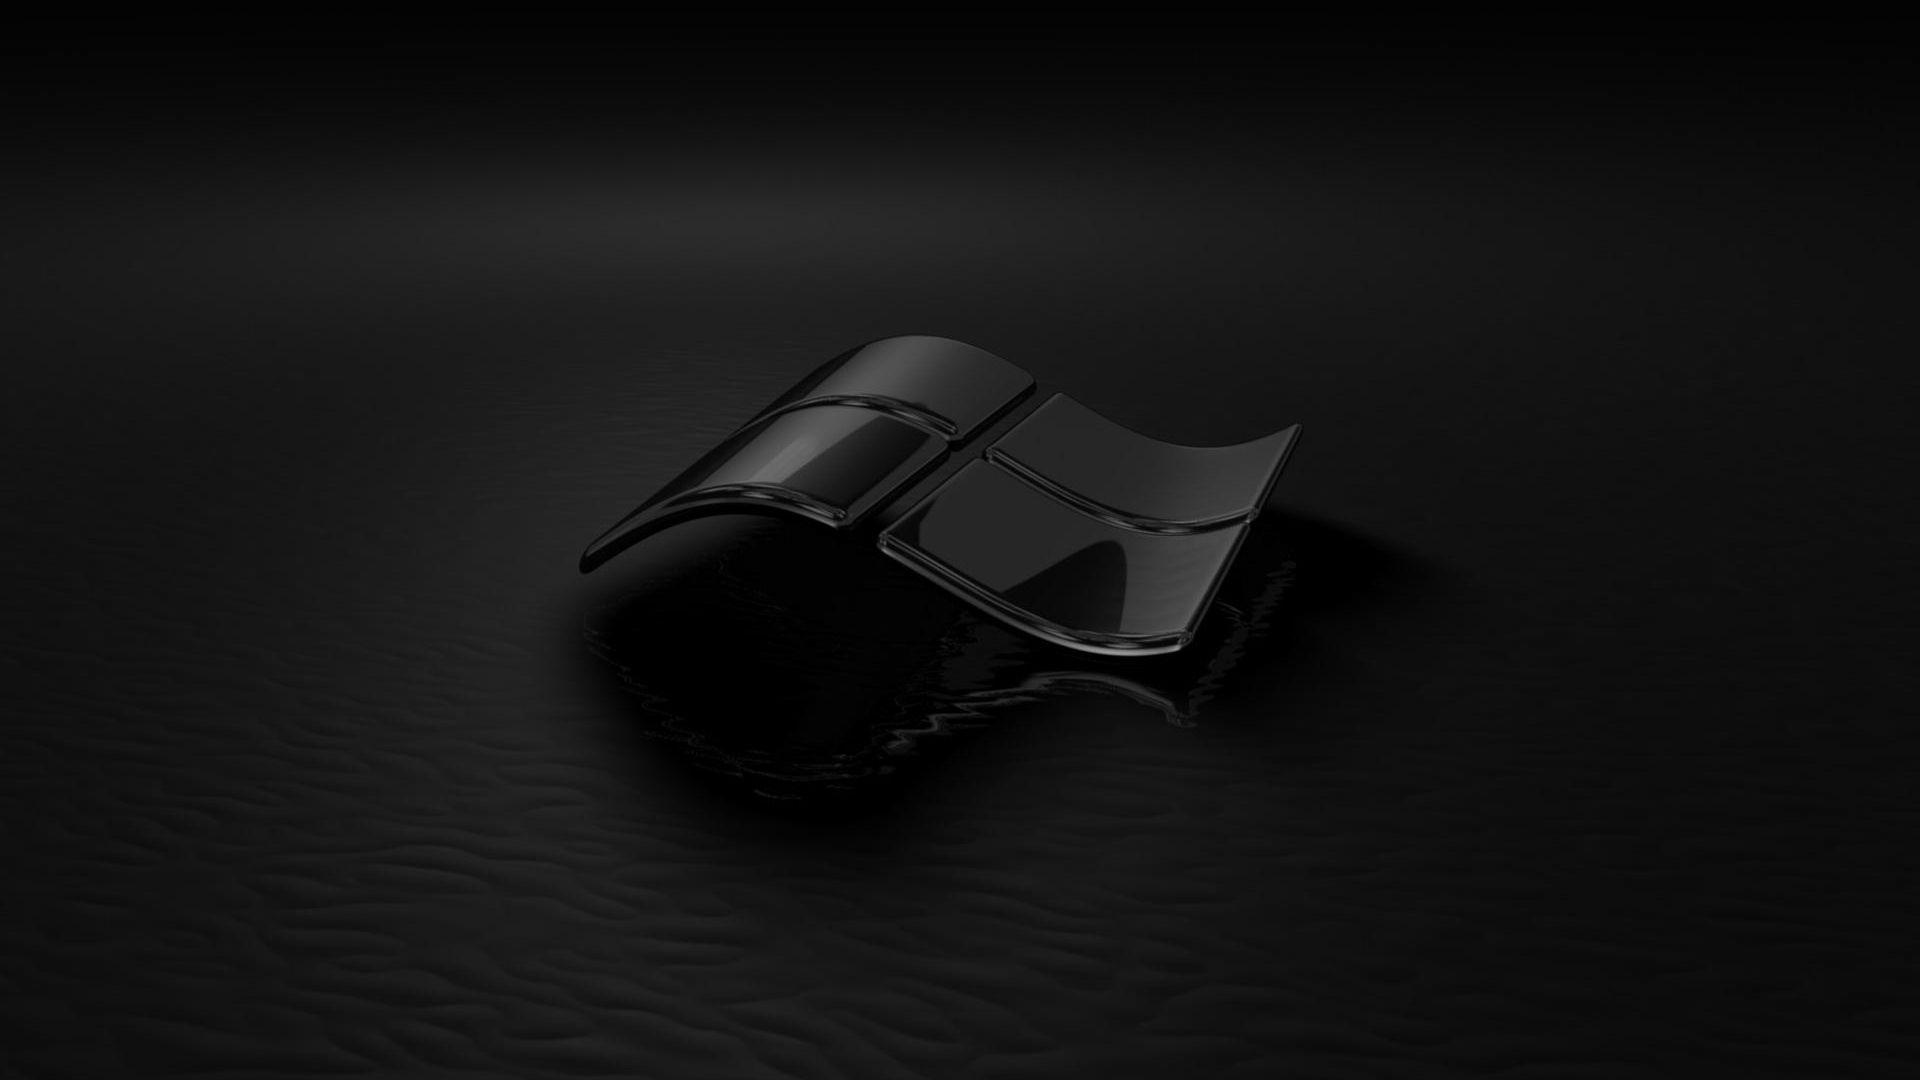 Nếu bạn yêu thích màu đen và muốn có một nền desktop đẹp mắt và sắc nét, hãy xem hình nền đen trên Windows 7 của chúng tôi. Nó sẽ khiến cho máy tính của bạn trông dịu dàng và trang nhã hơn.